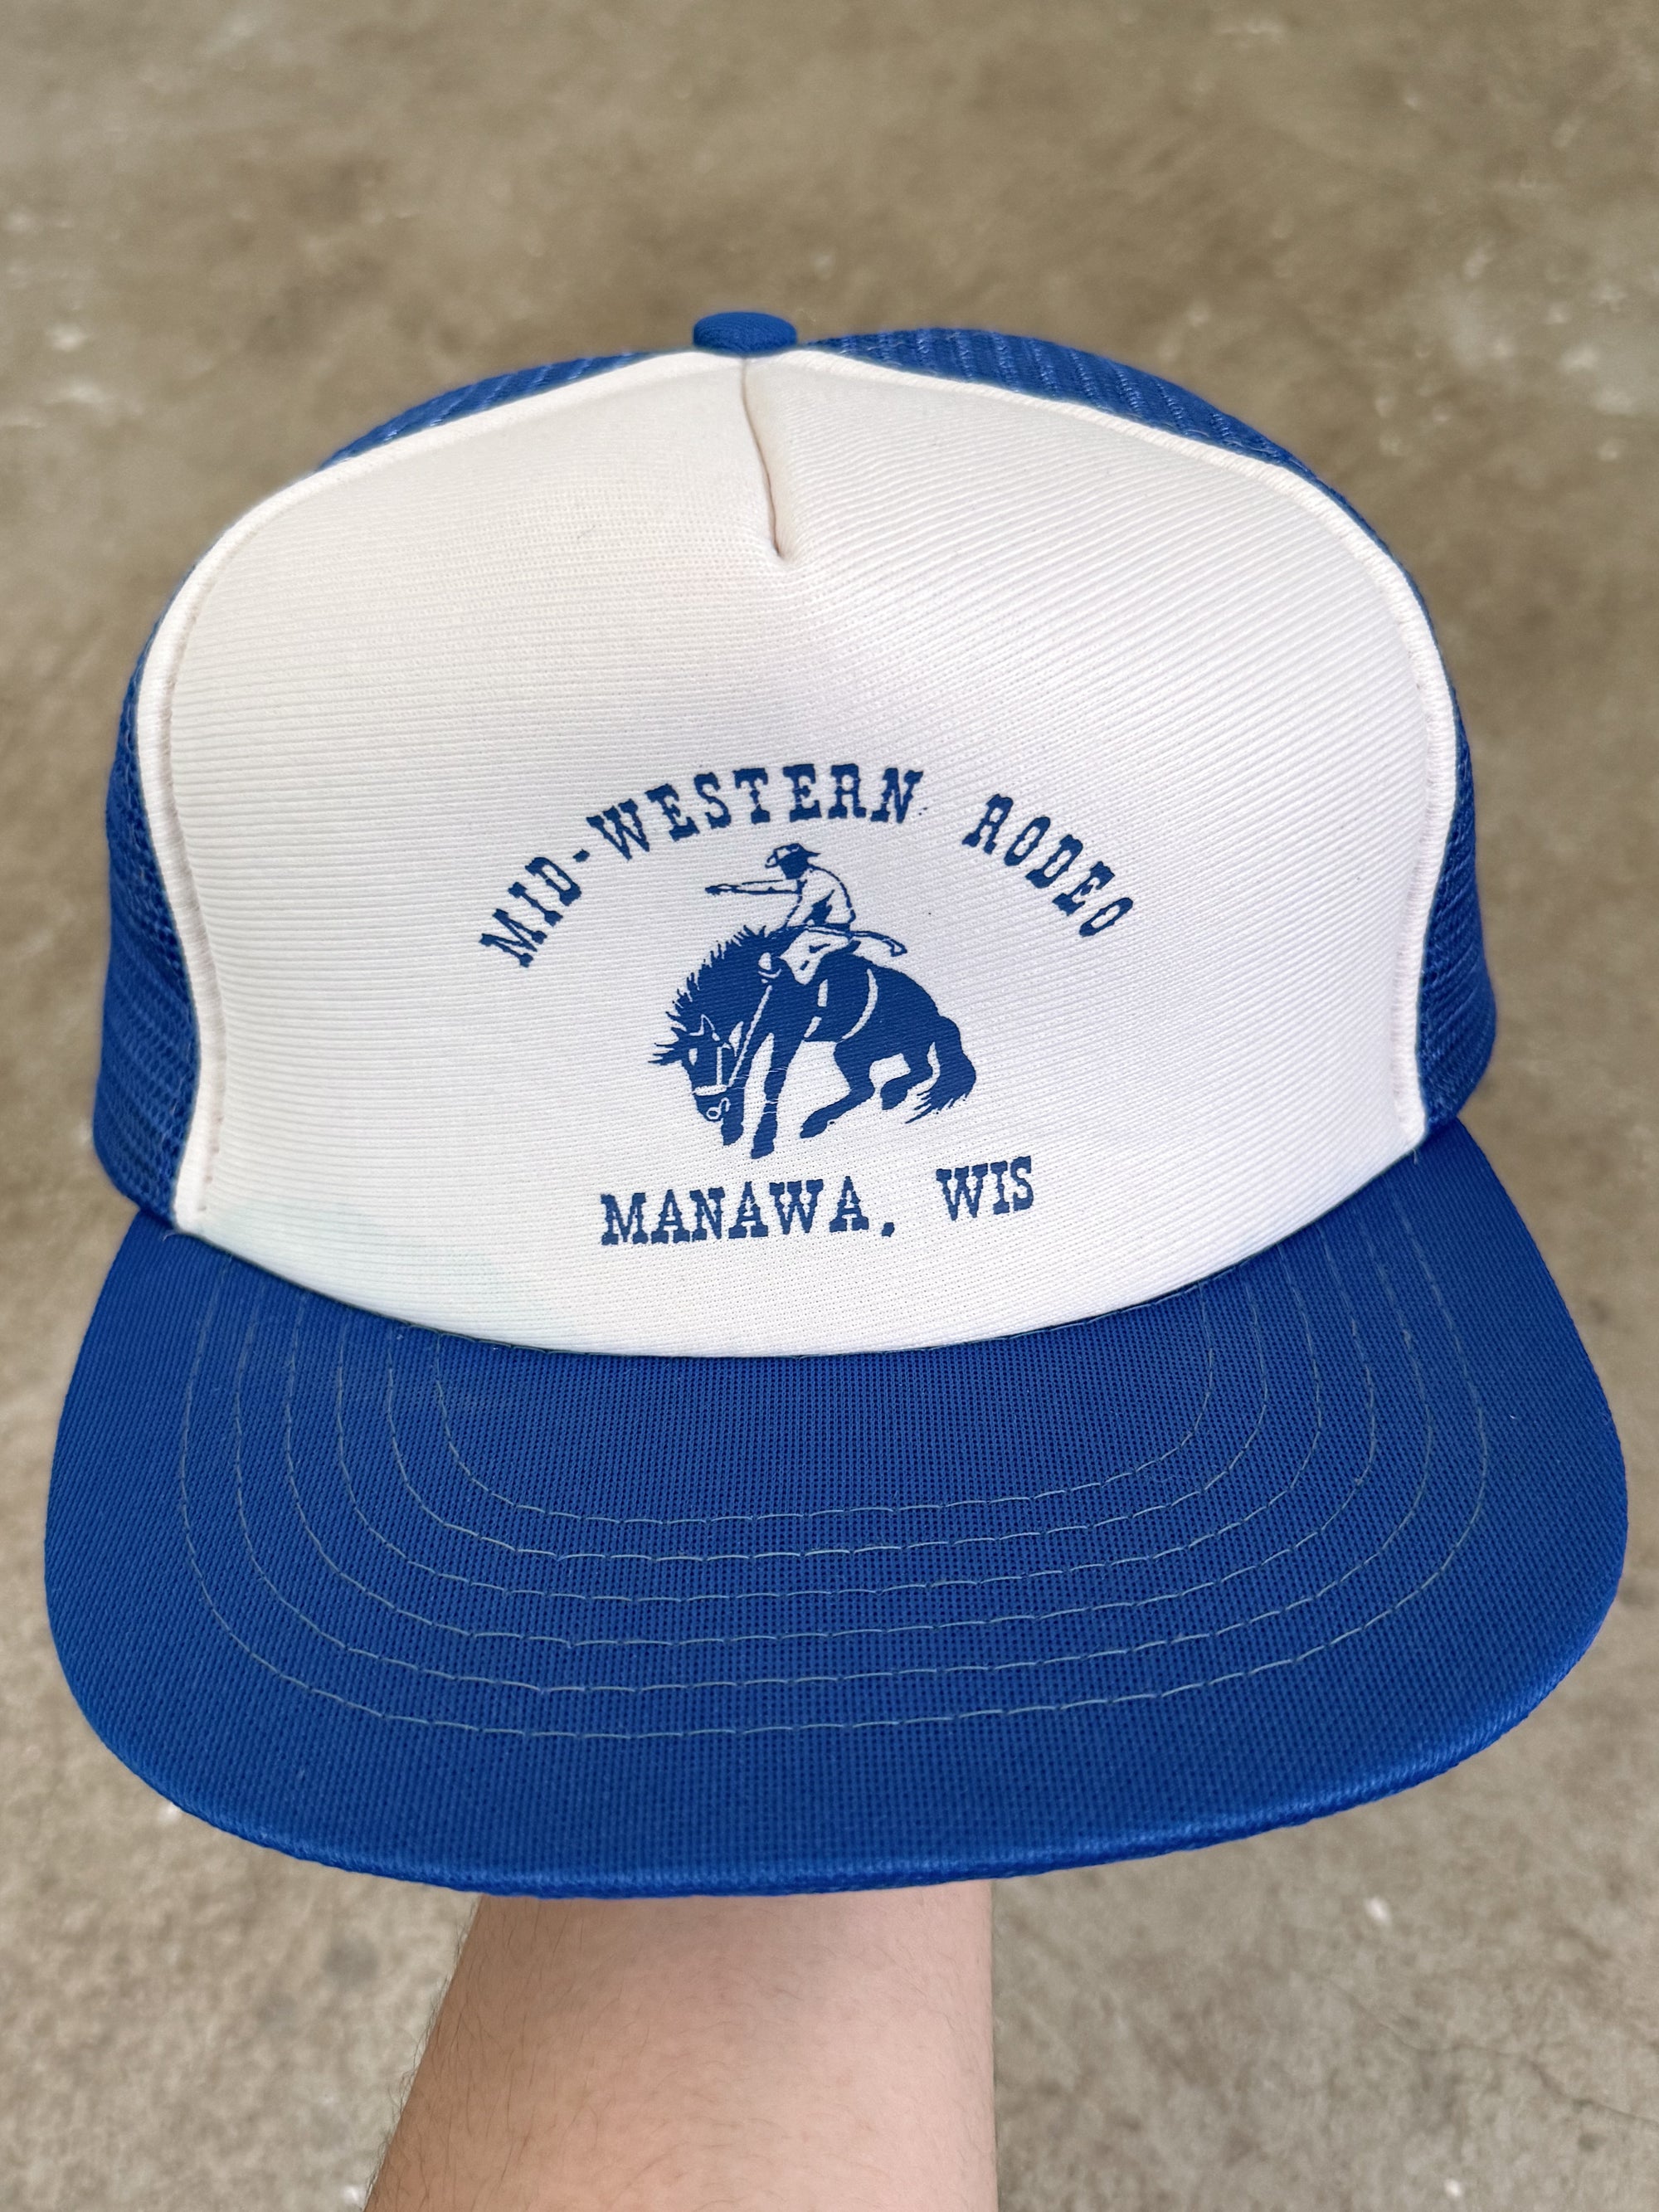 1980s "Mid-Western Rodeo" Trucker Hat